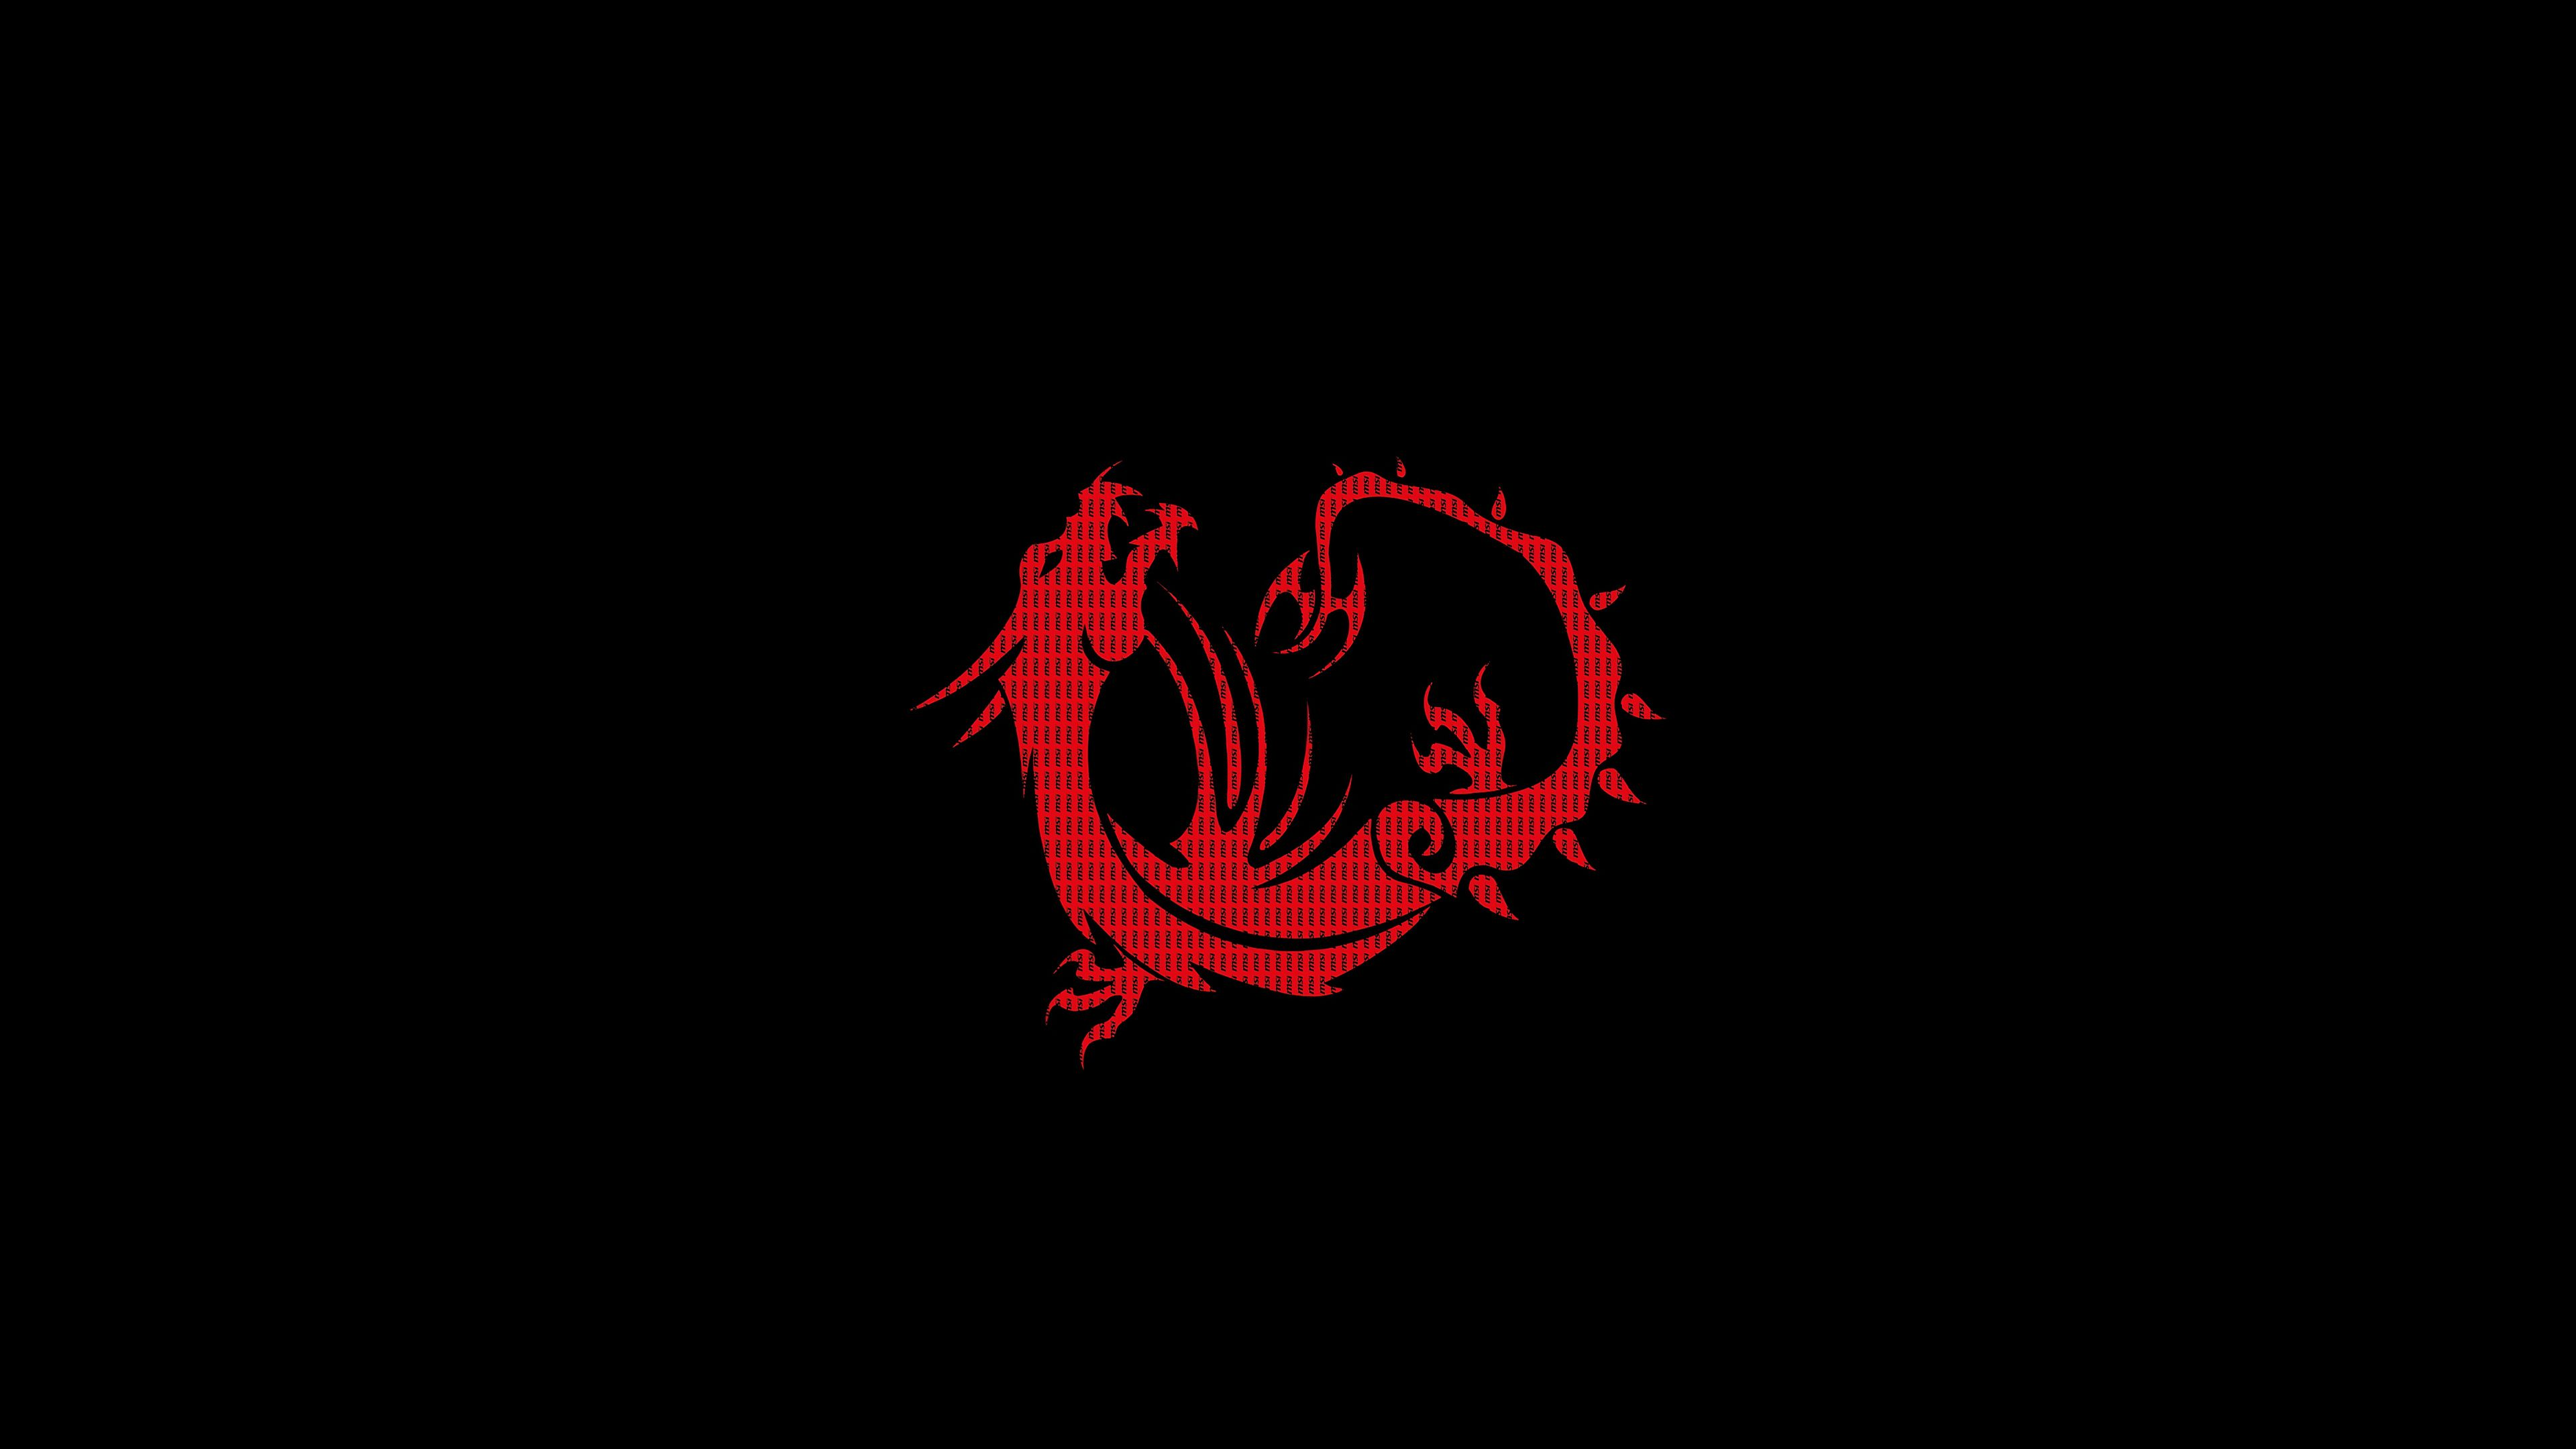 Red Minimalist Black Dragon 3840x2160